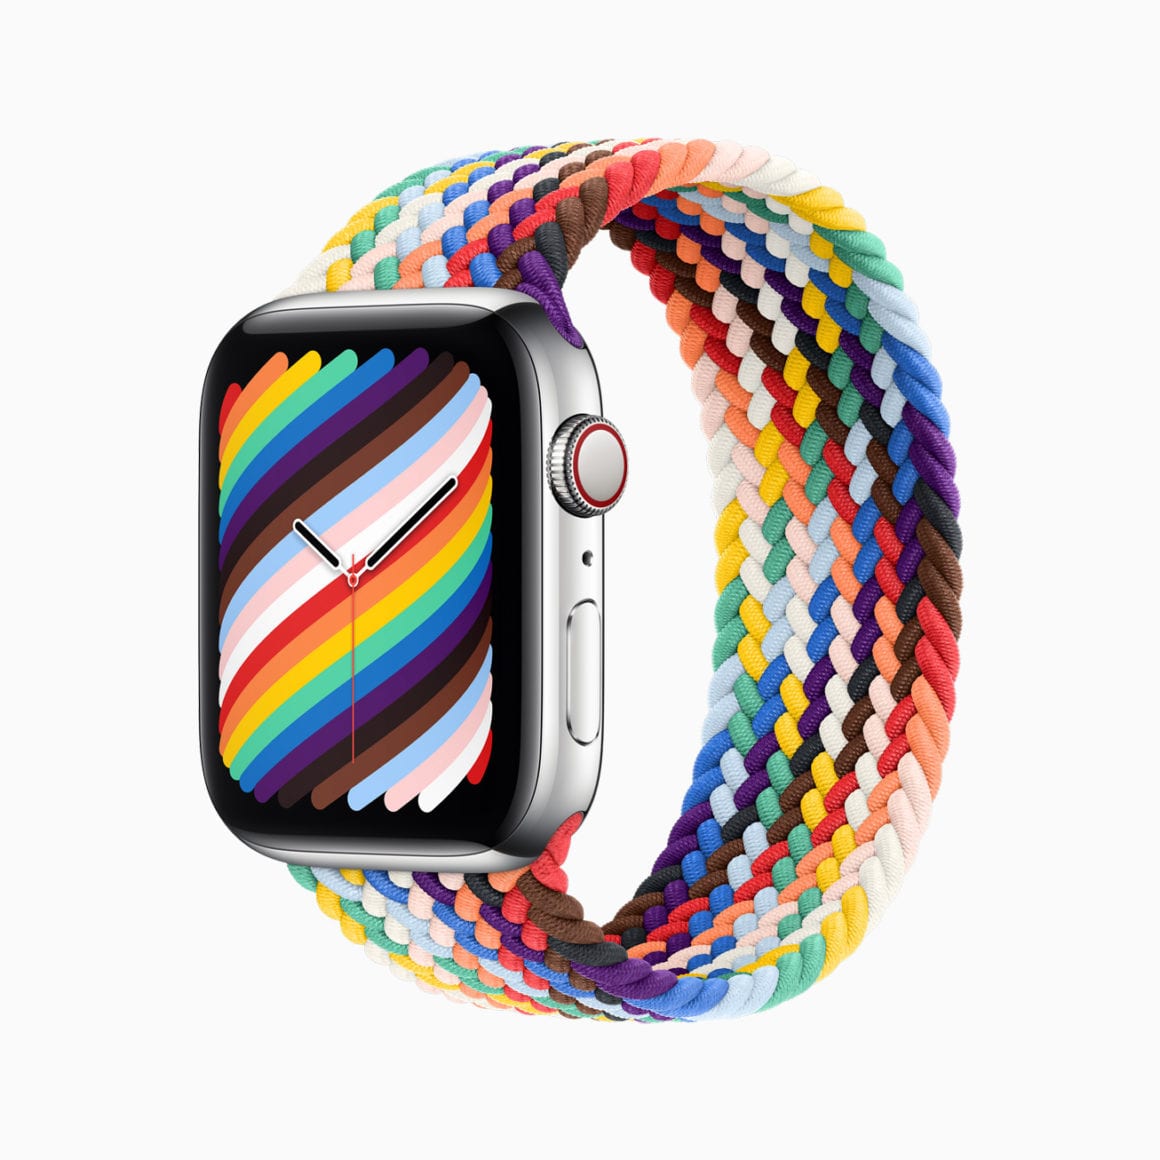 Apple Watch dostali nové Pride Edition náramky MacBlog.sk